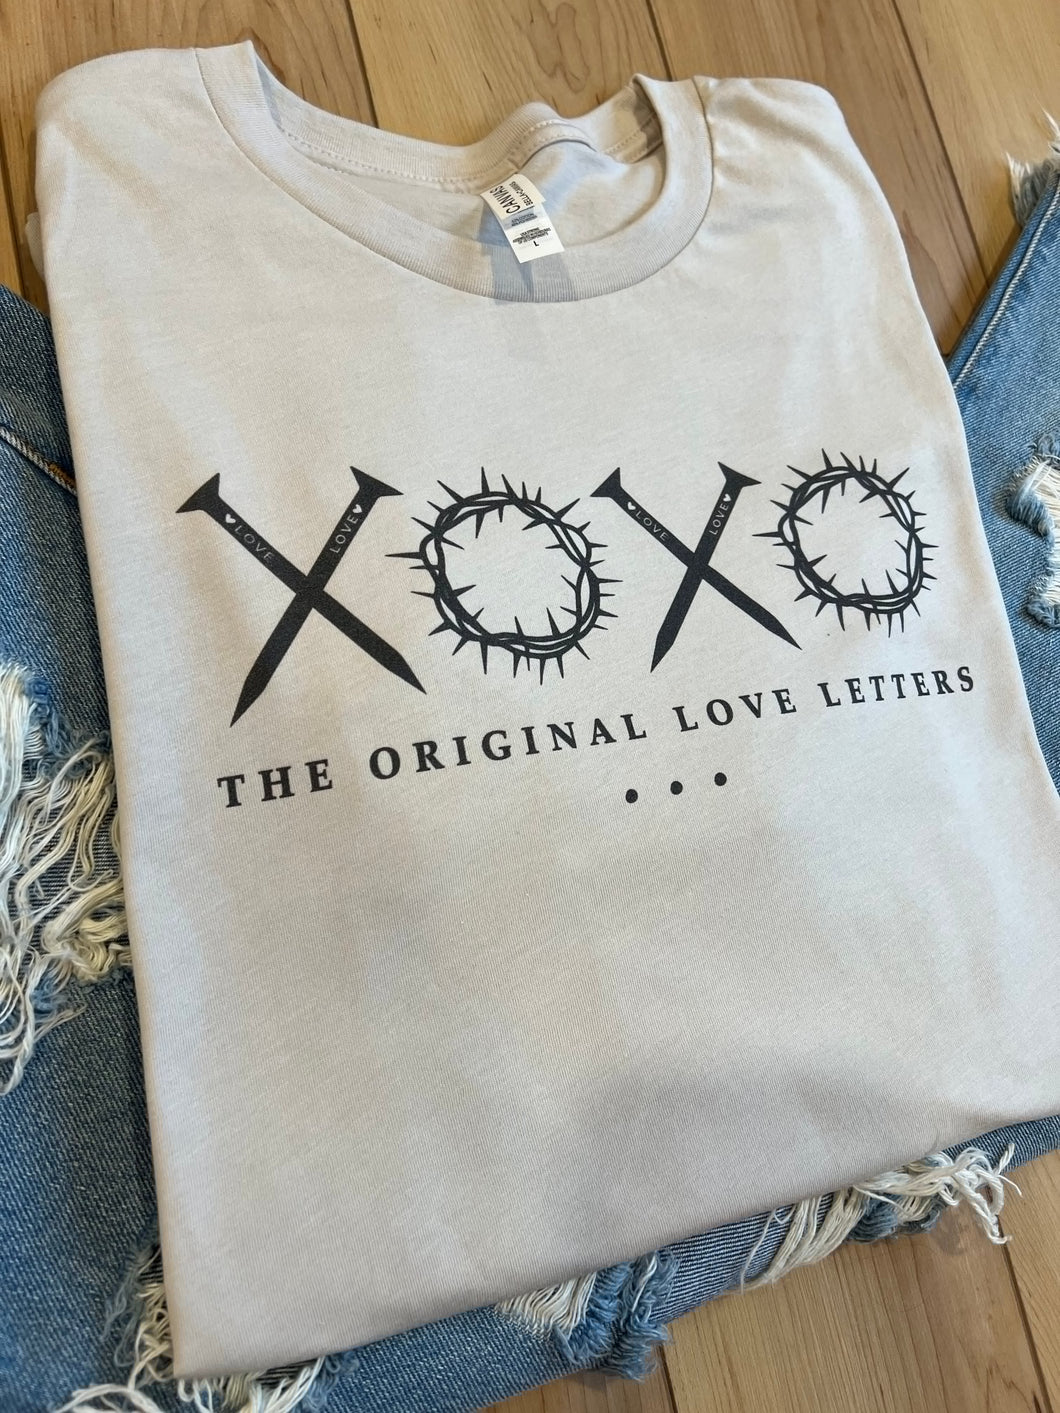 XOXO Original Love Letters